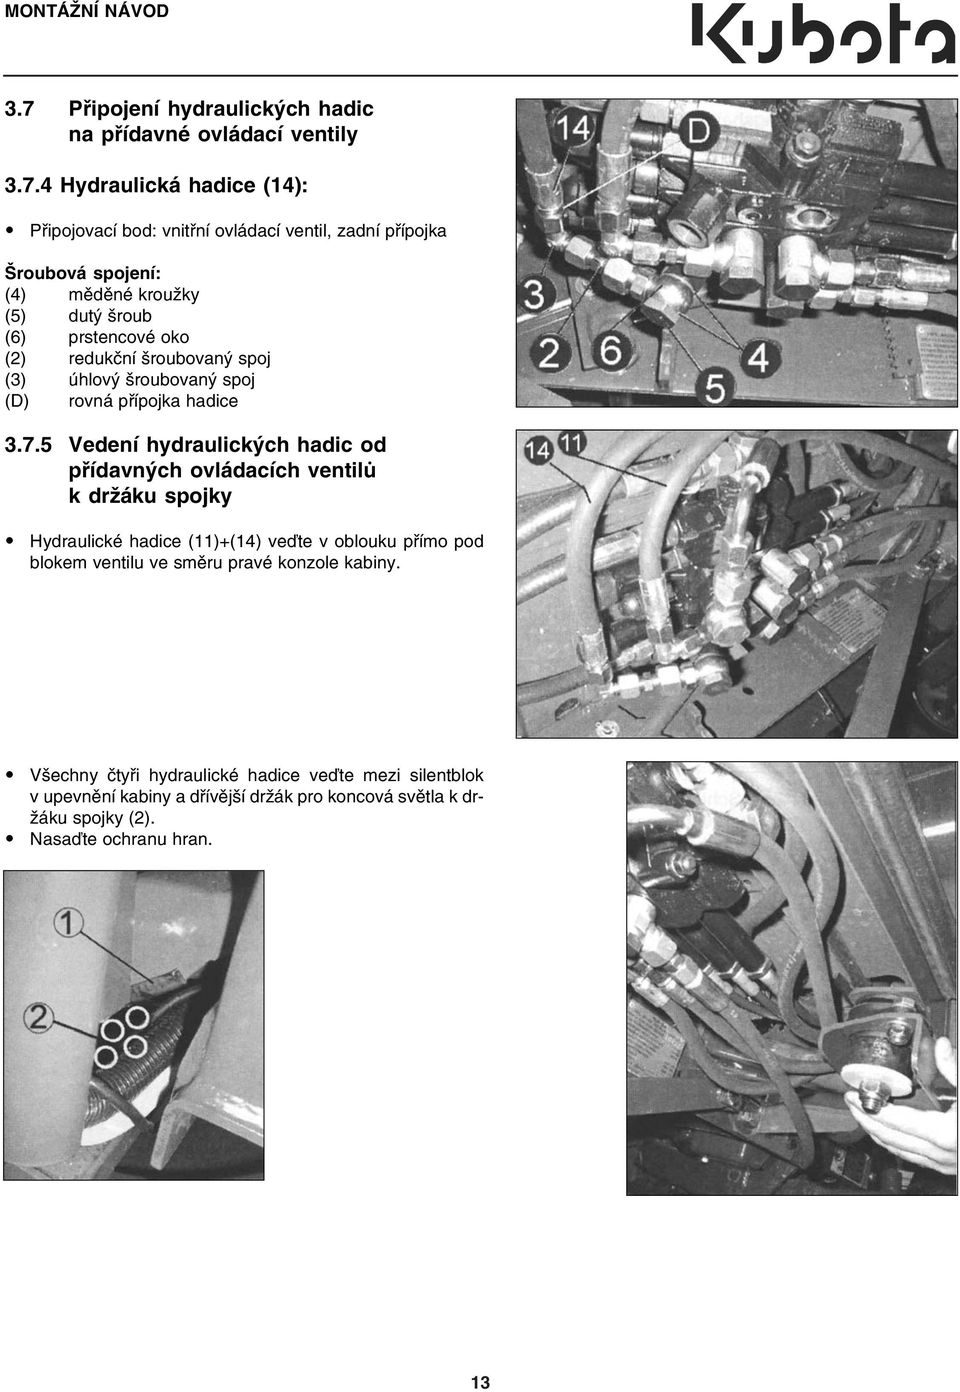 4 Hydraulická hadice (14): Připojovací bod: vnitřní ovládací ventil, zadní přípojka Šroubová spojení: (4) měděné kroužky (5) dutý šroub (6) prstencové oko (2)